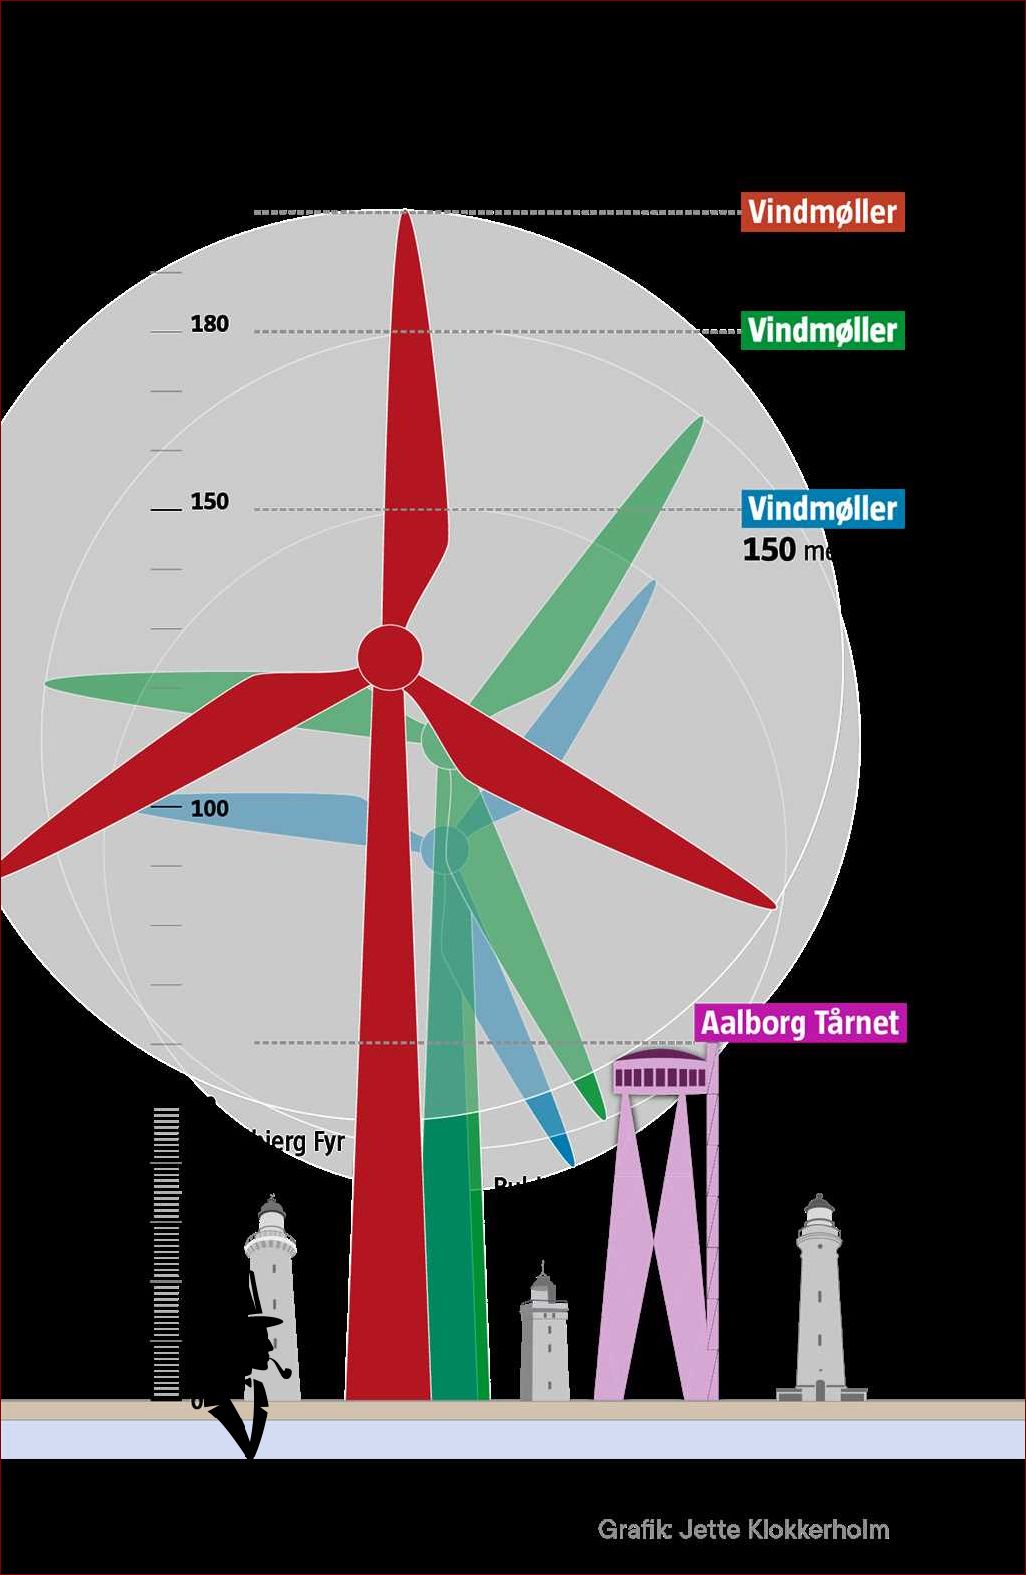 Introduktion til verdens største vindmølle